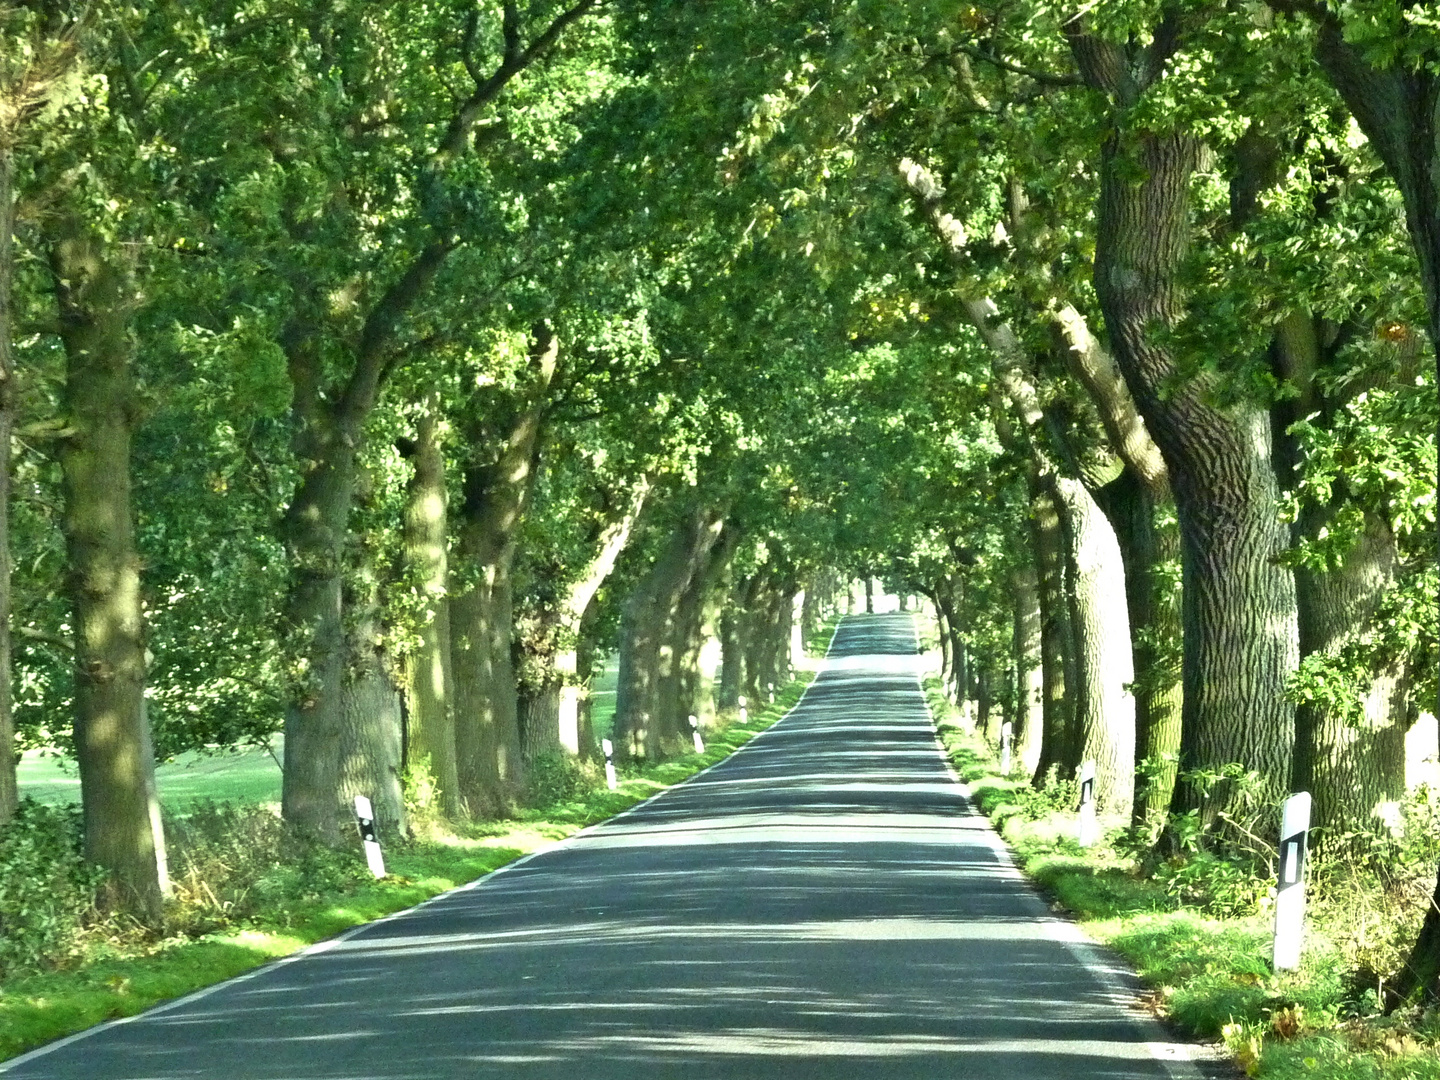 Allee Allee ist eine Straße mit vielen Bäumen